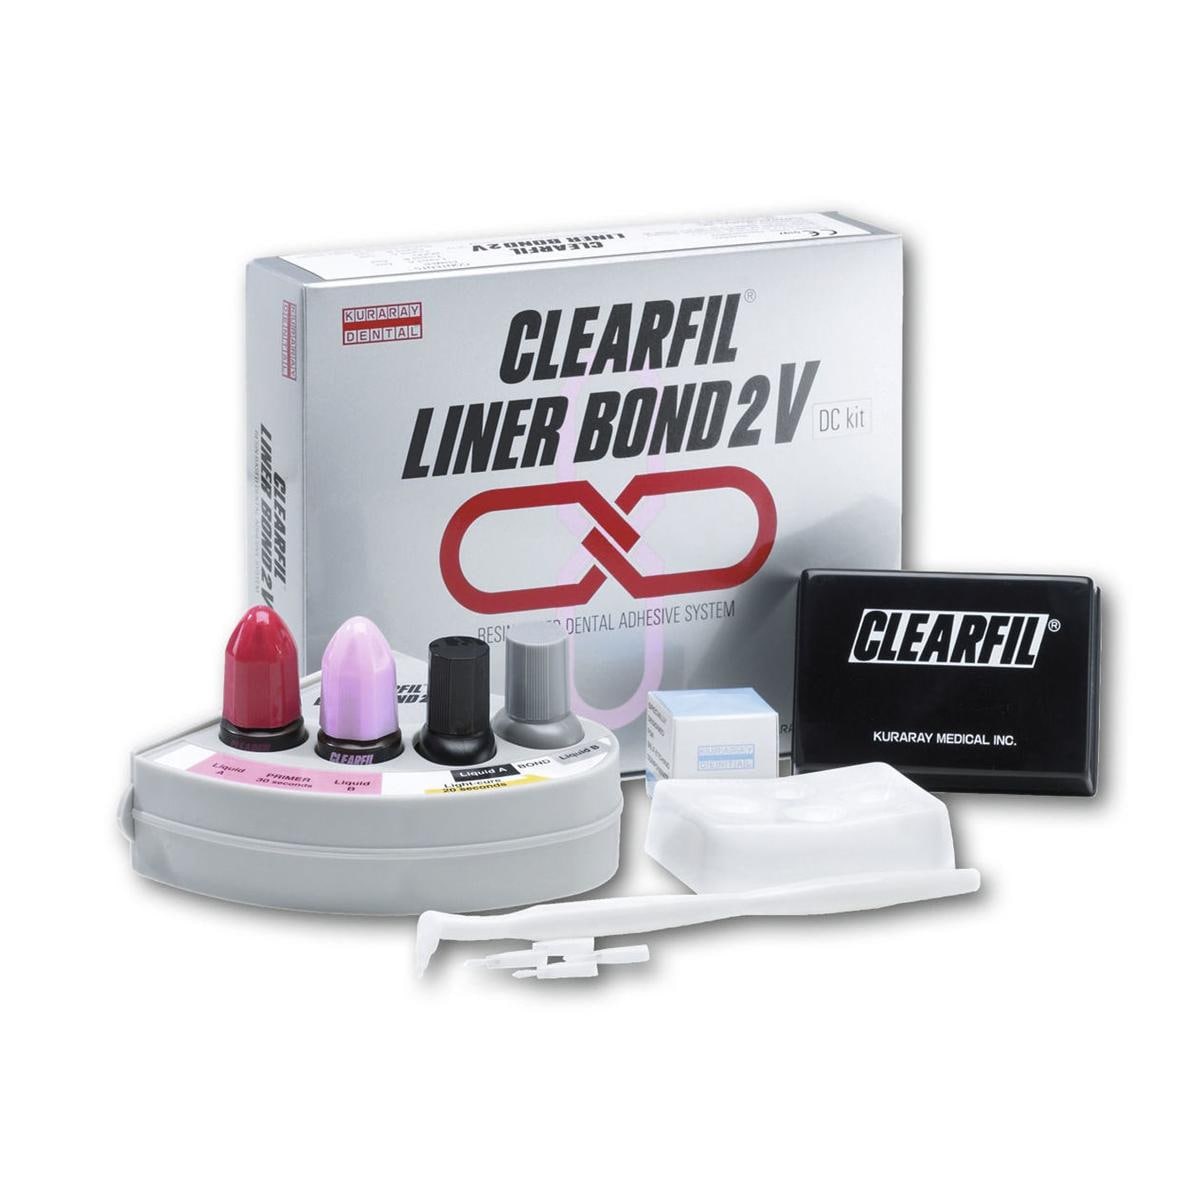 Clearfil Liner Bond 2V Intropack - Complete set